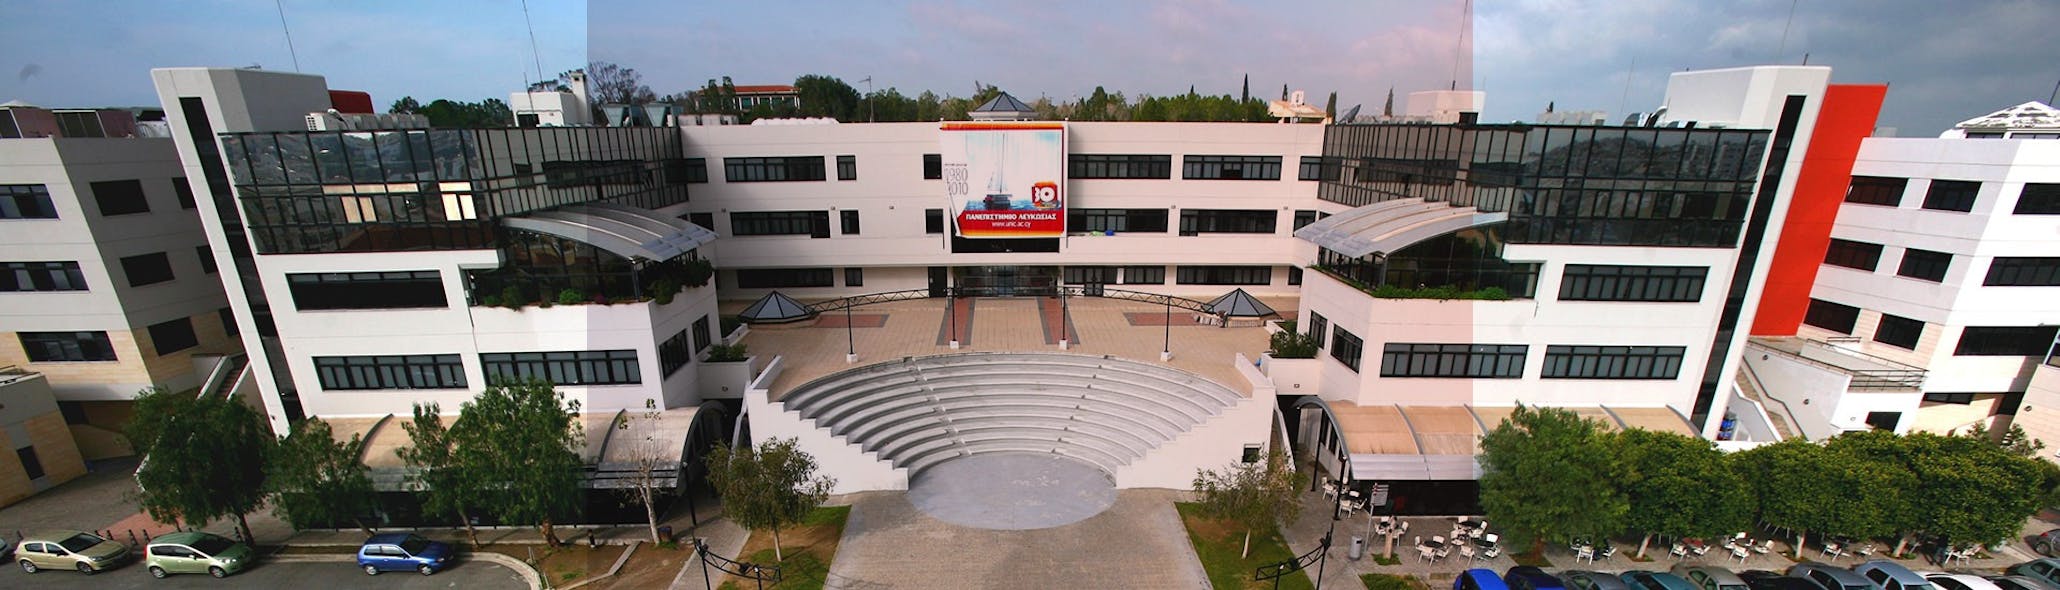 Premises of University of Nicosia